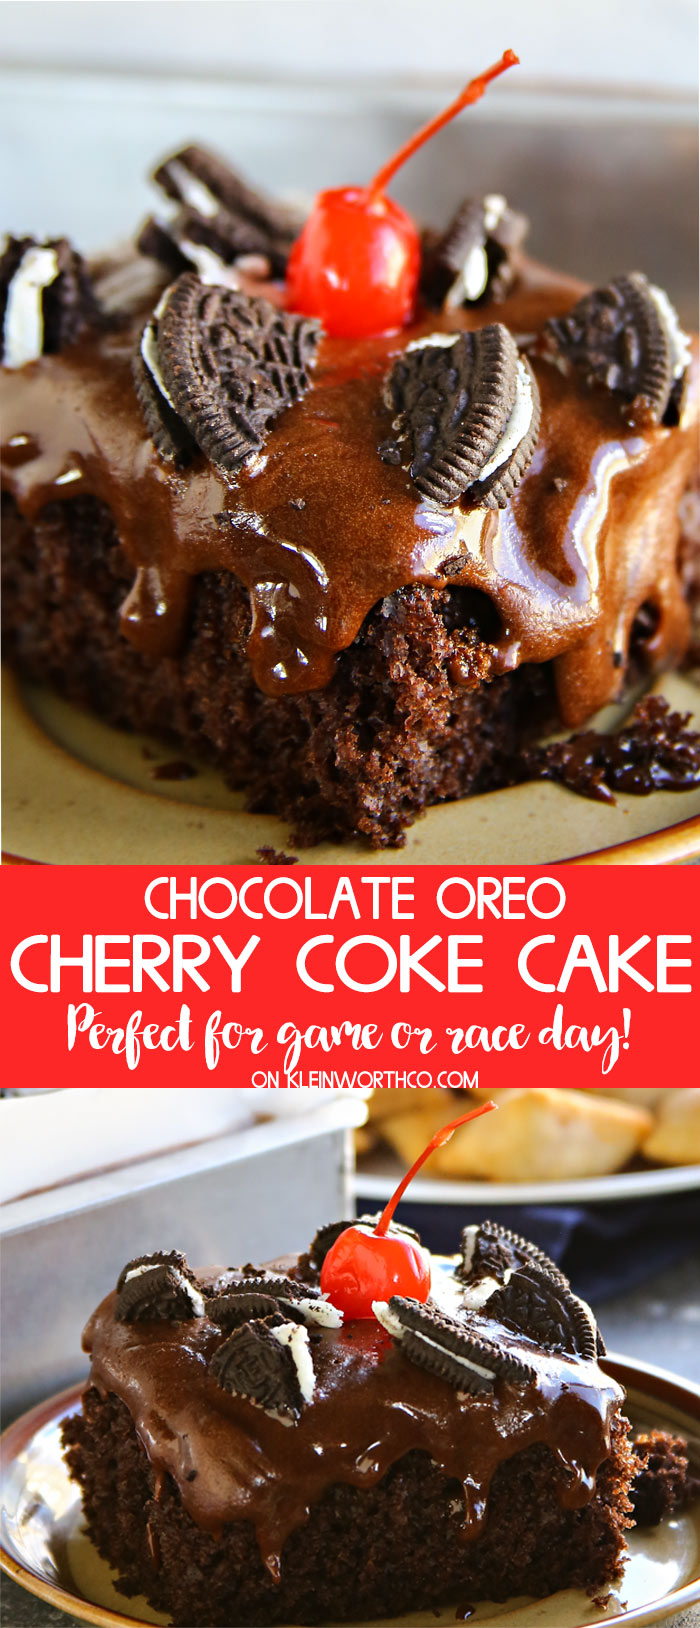 Chocolate Oreo Cherry Coke Cake Recipe